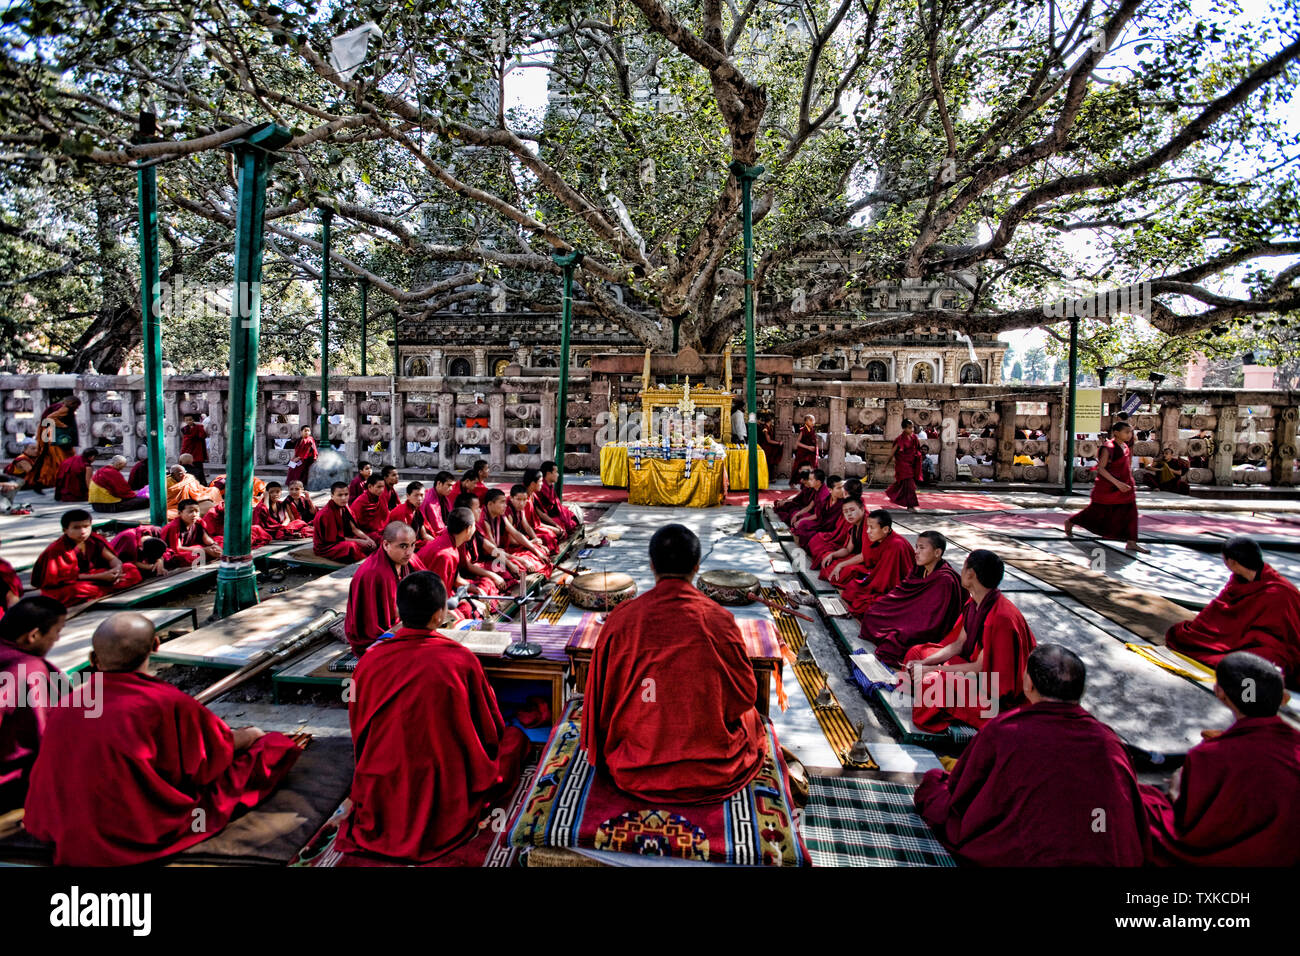 Tibetan monks under the Bodhi tree where Shakyamuni attained enlightenment, Mahabodhi Temple, Bodhgaya, Bihar, India. Stock Photo